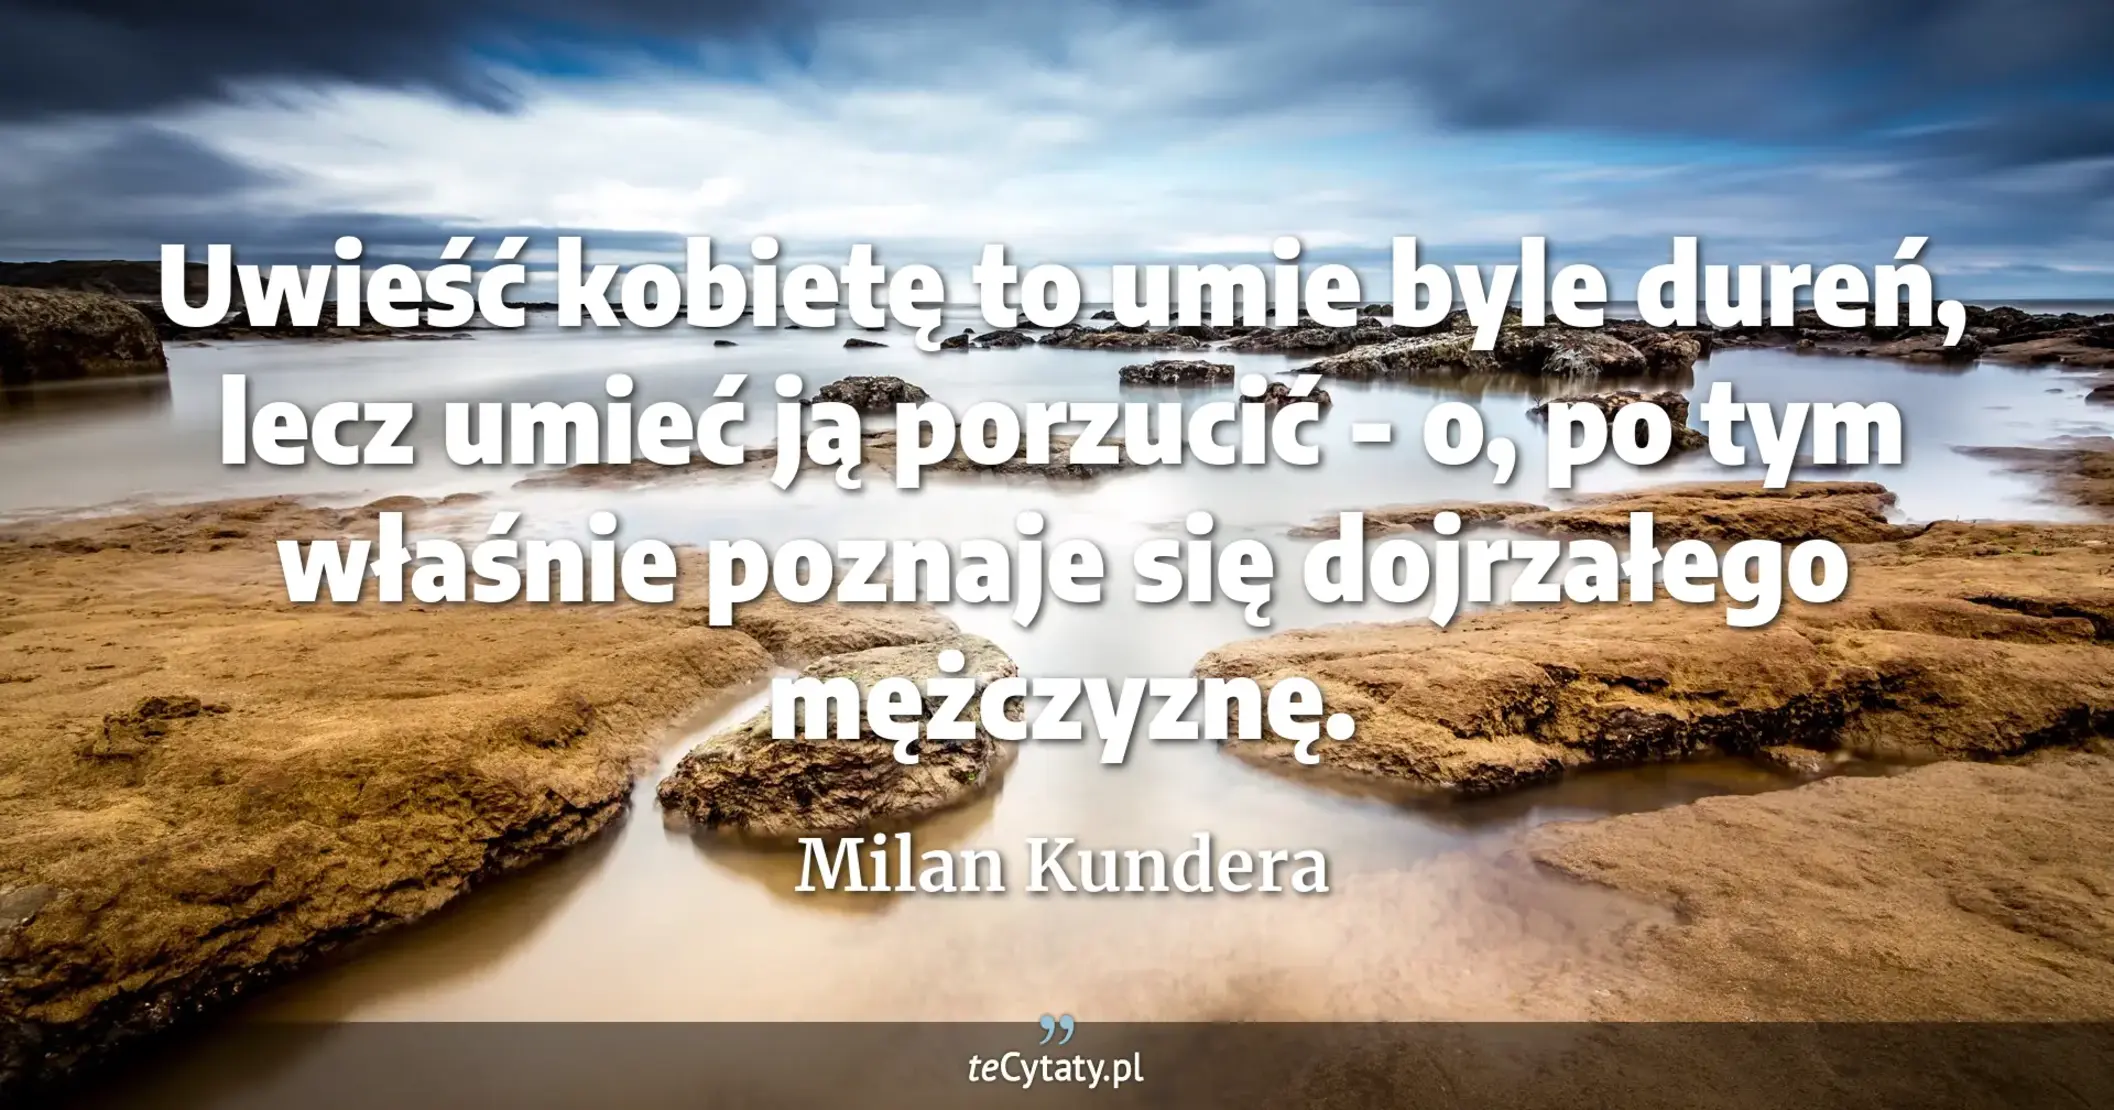 Uwieść kobietę to umie byle dureń, lecz umieć ją porzucić - o, po tym właśnie poznaje się dojrzałego mężczyznę. - Milan Kundera